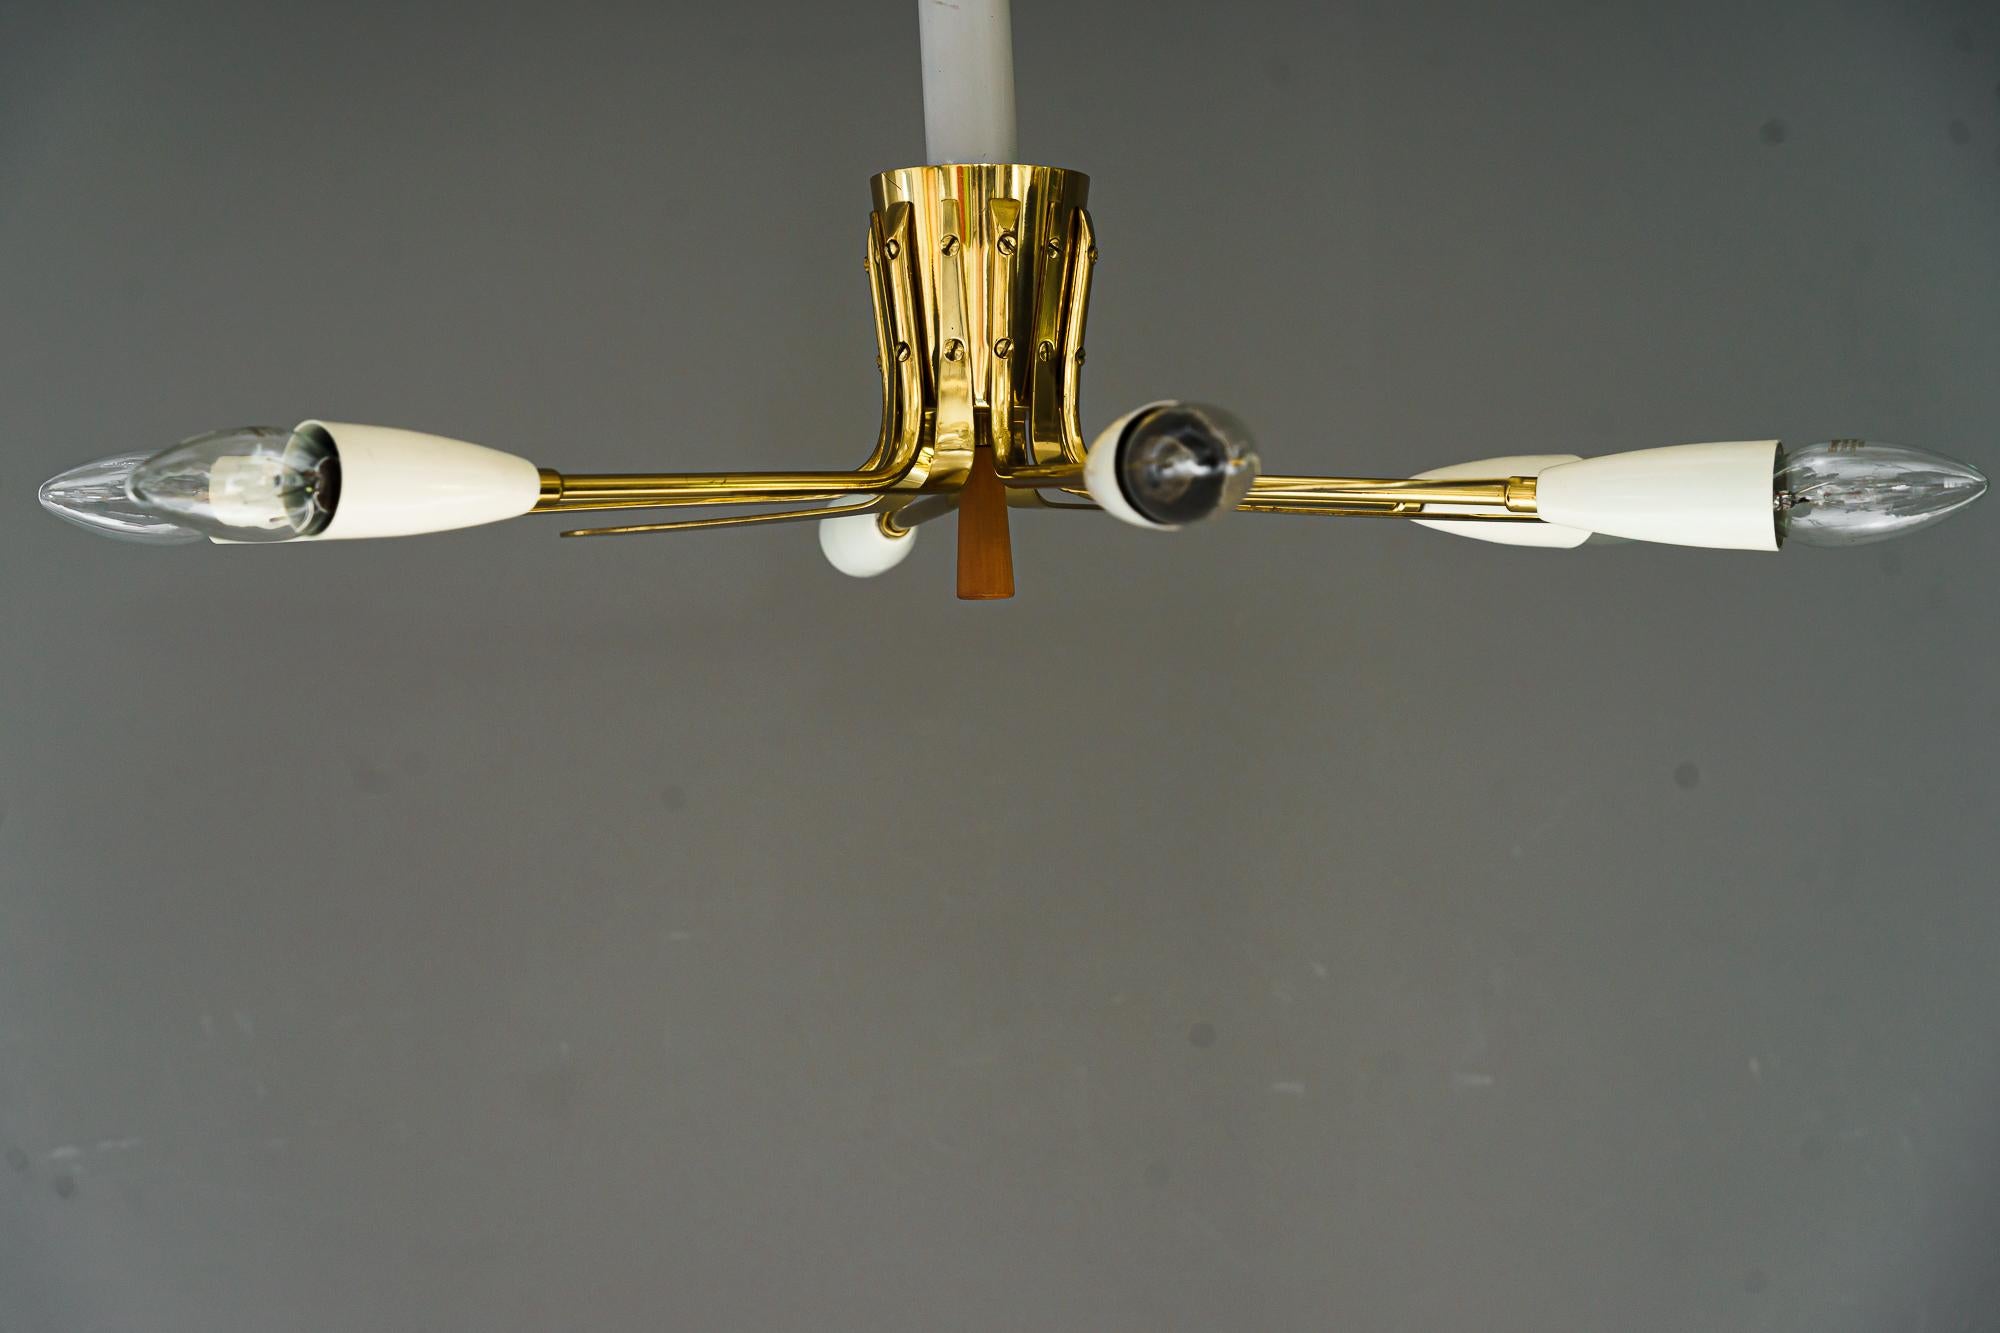 2x Monture affleurante Sputnik Design/One, Vienne 1950
Etat original
Prix par paire